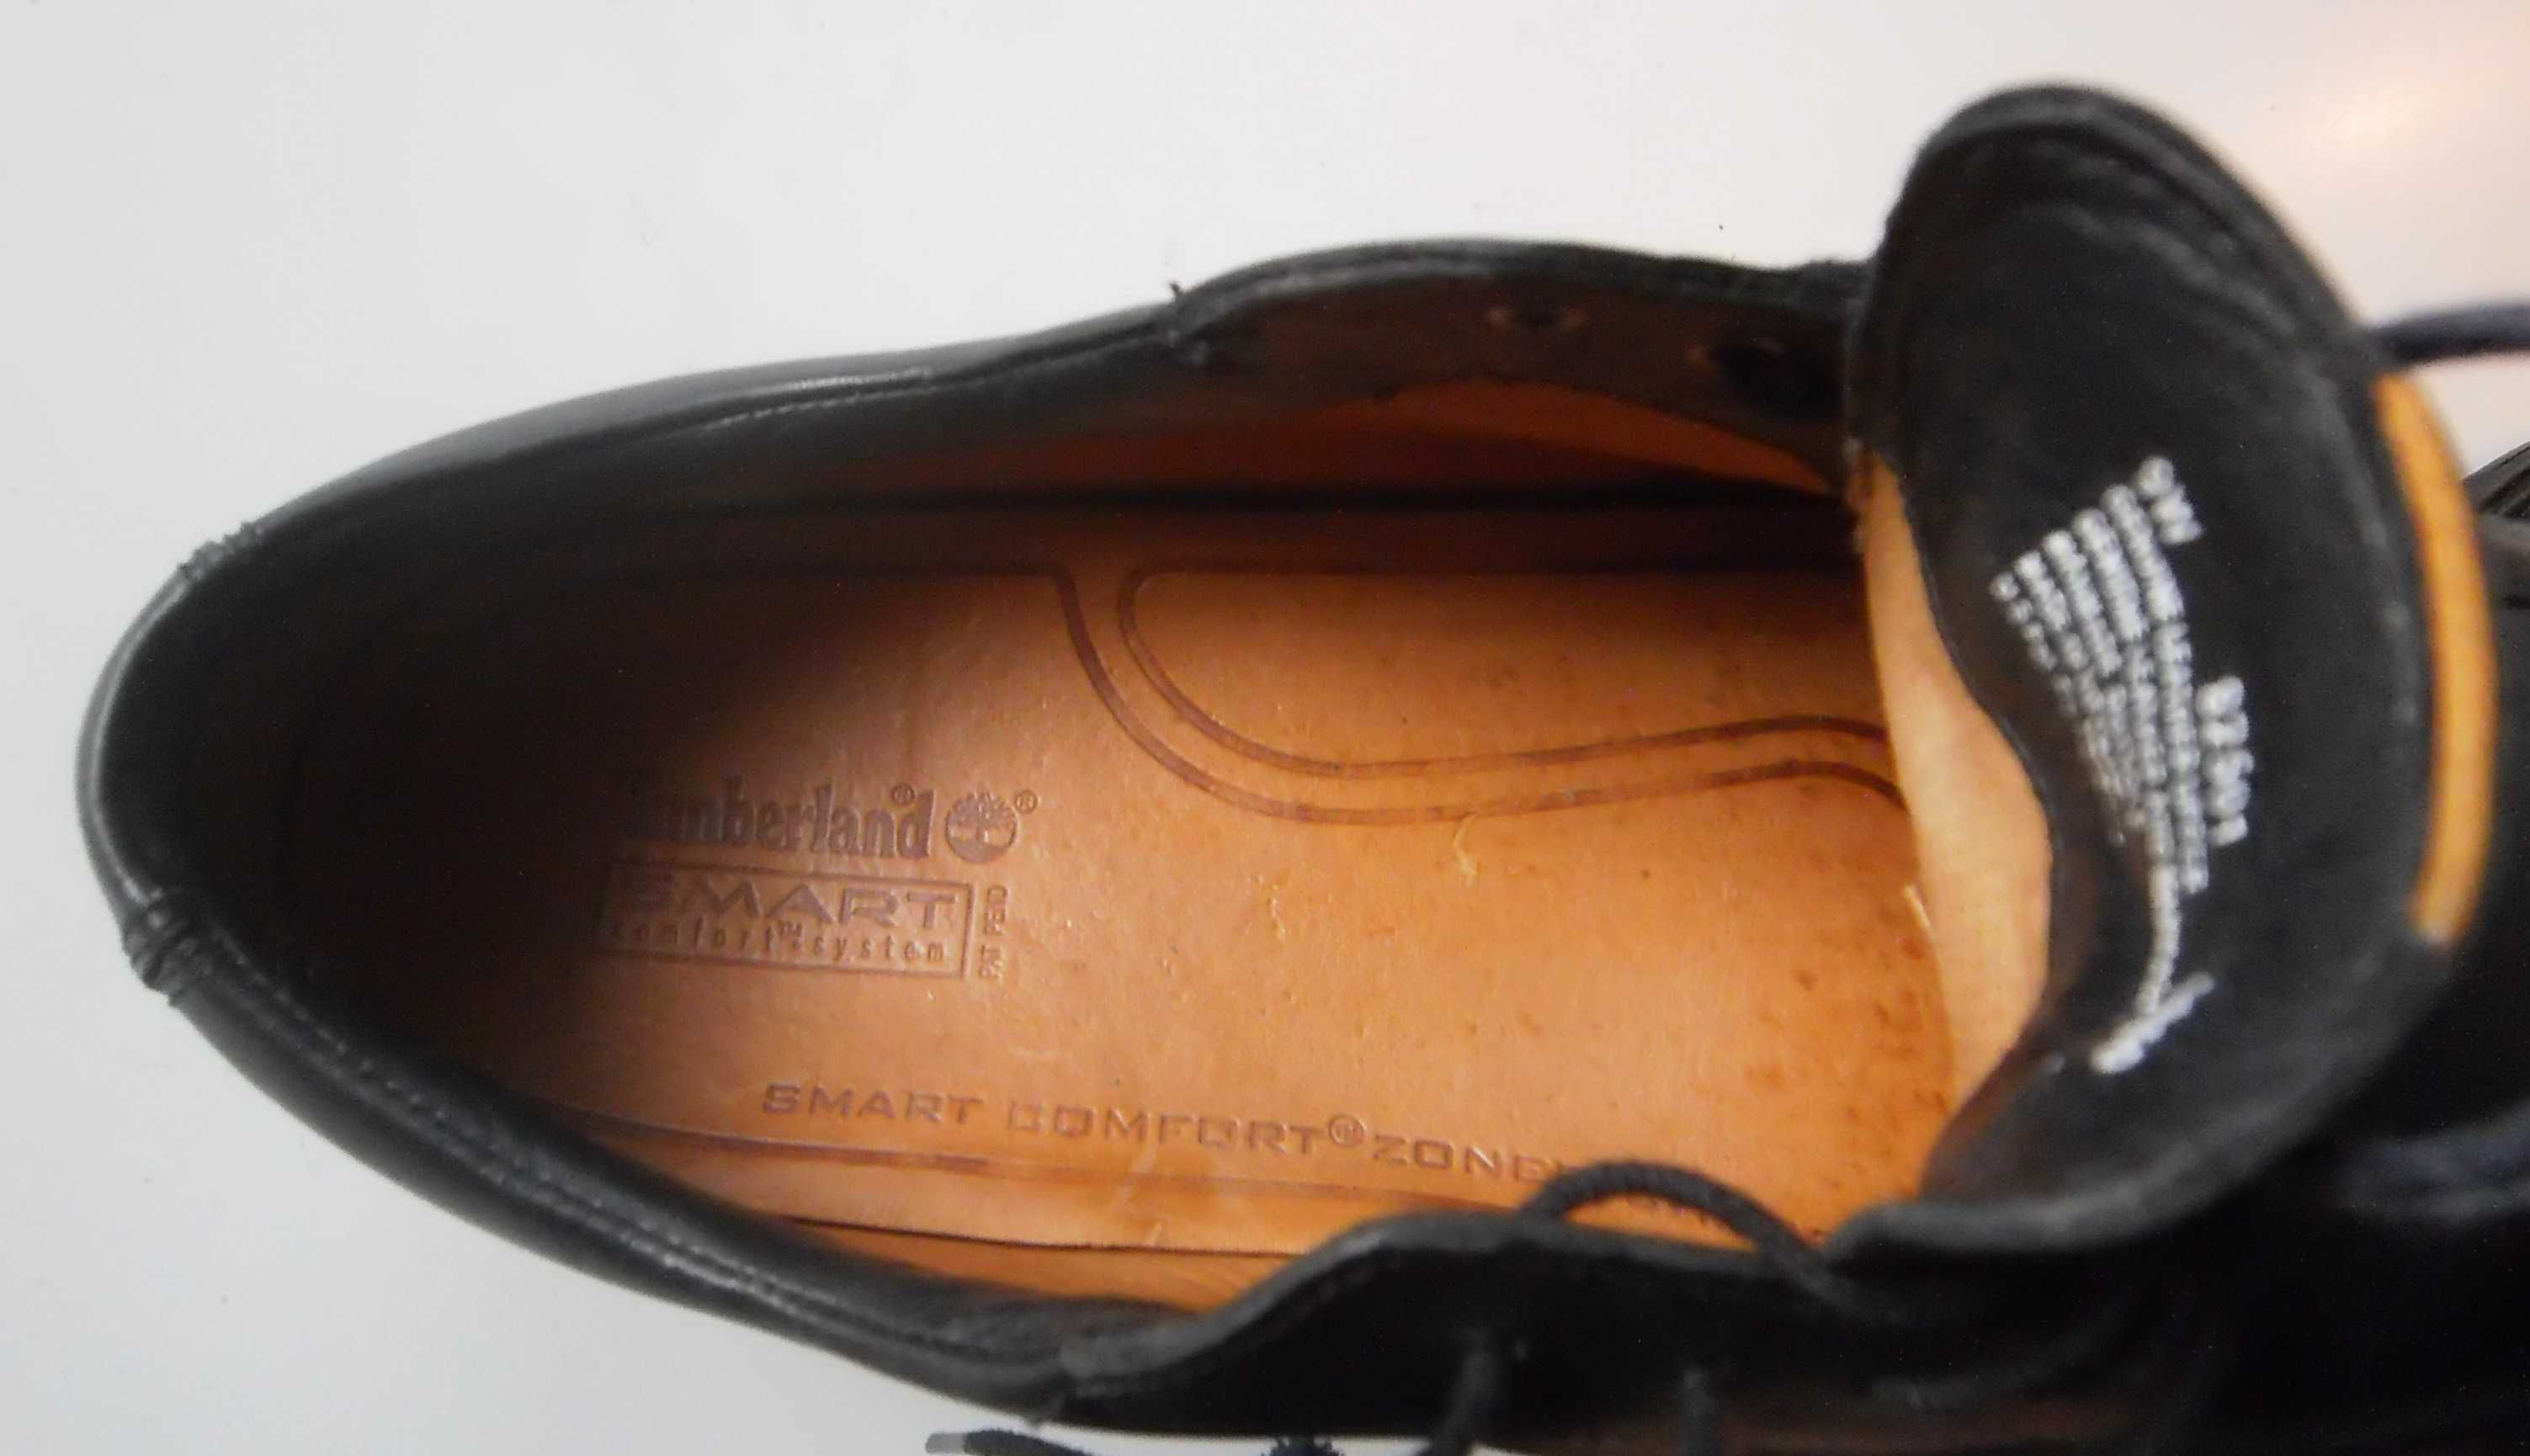 OPORTUNIDADE P/Homem/T 42-9W/ Sapatos pretos TIMBERLAND - Impermeáveis